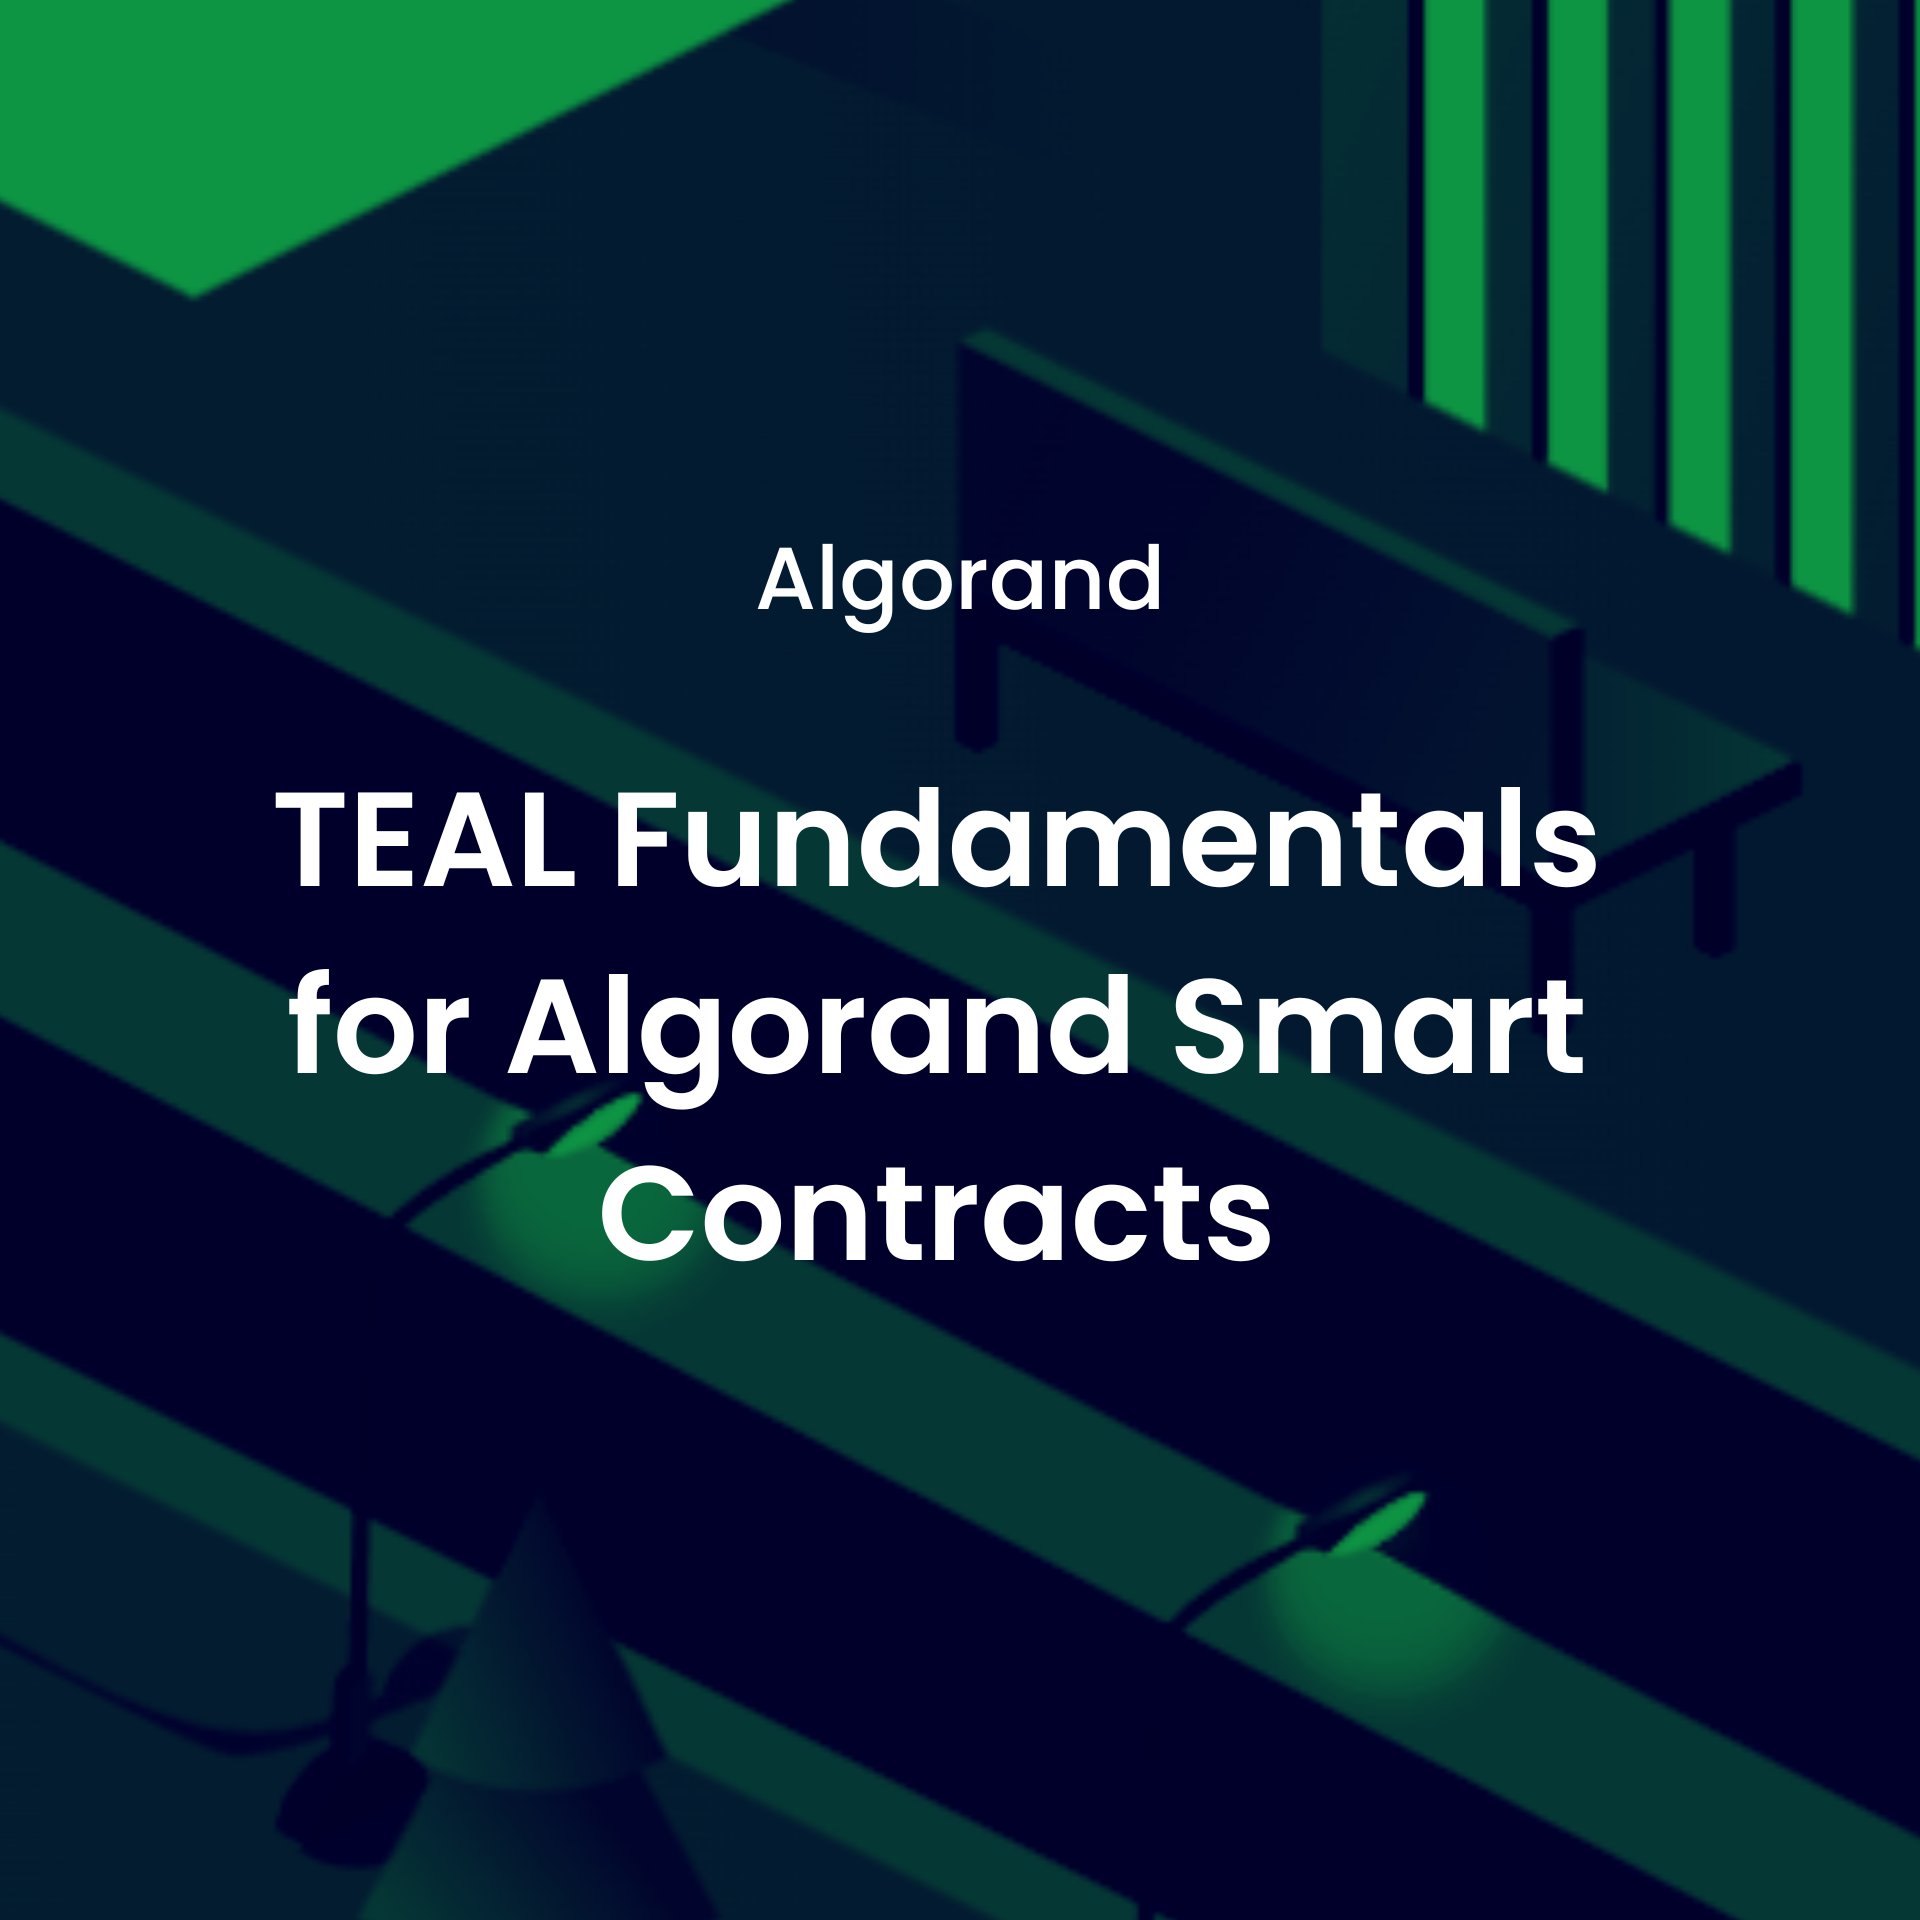 TEAL Fundamentals for Algorand Smart Contracts